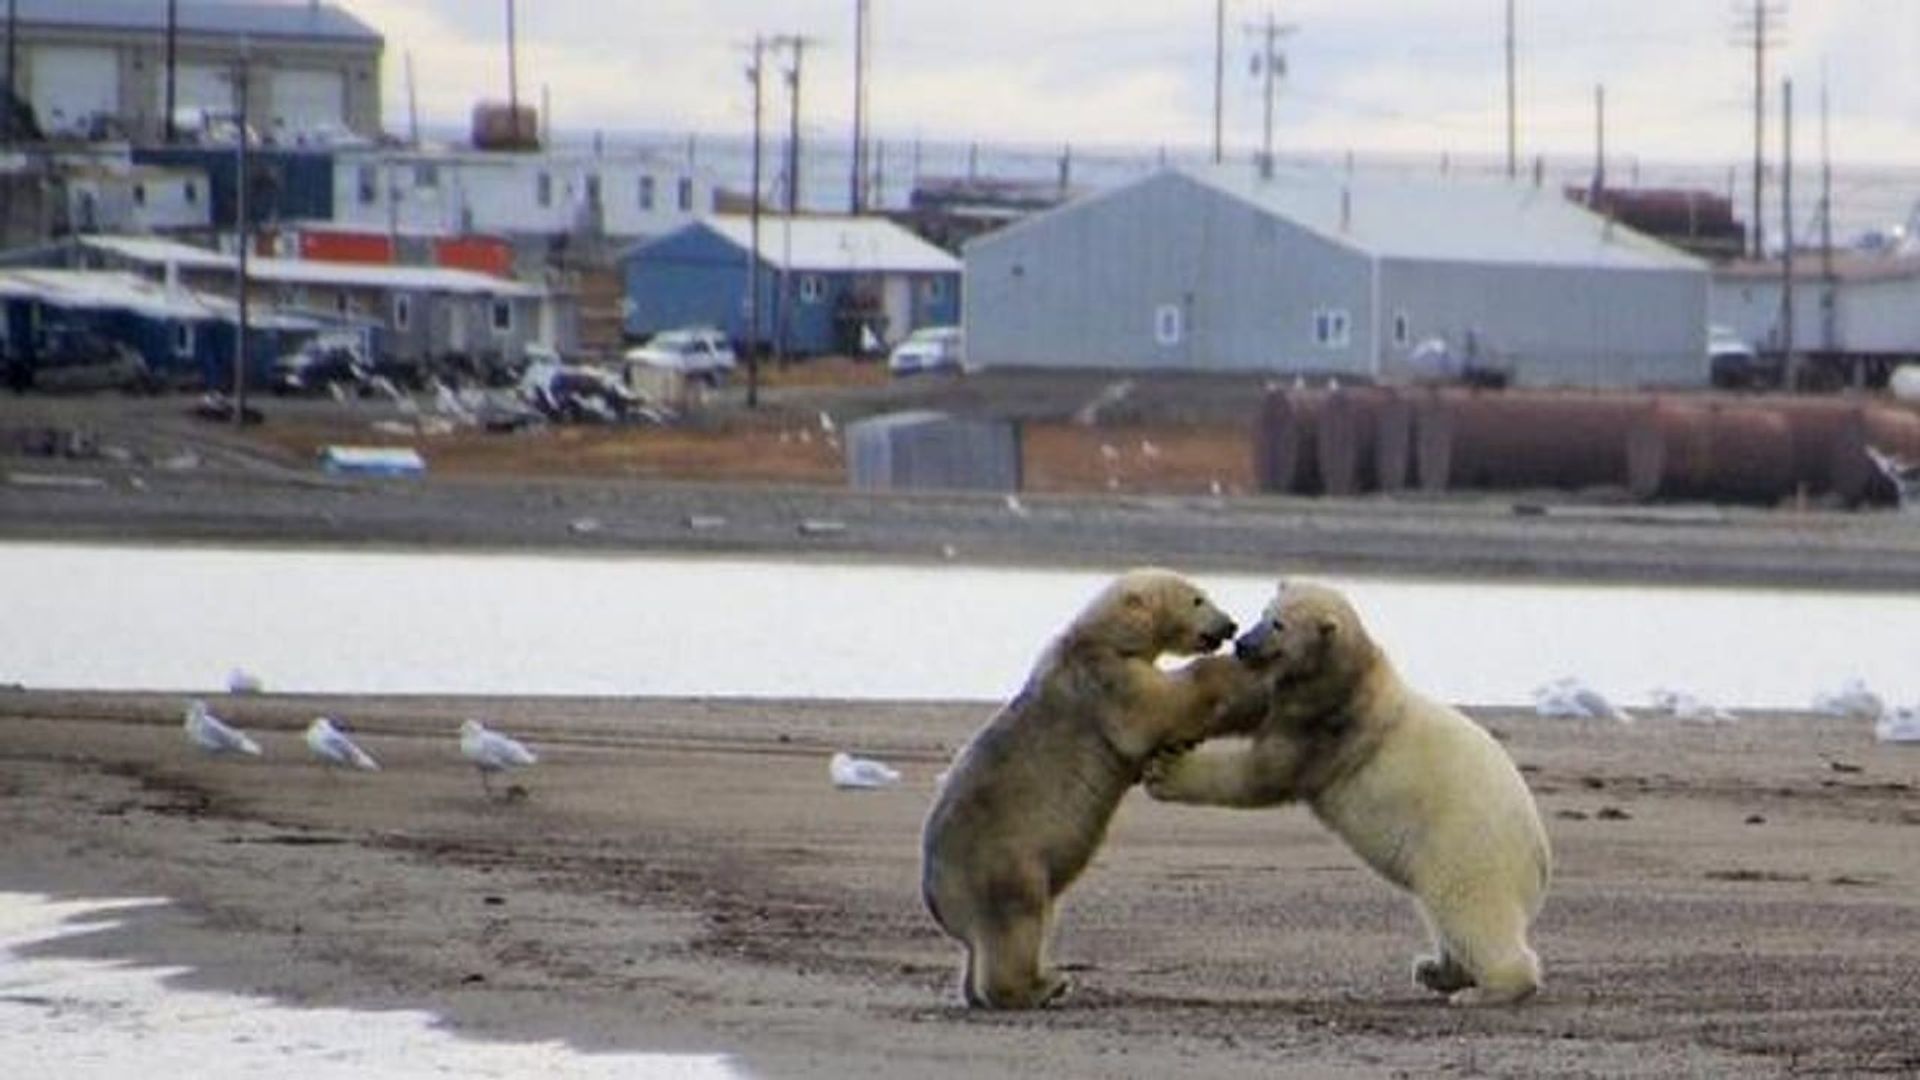 The Great Polar Bear Feast background